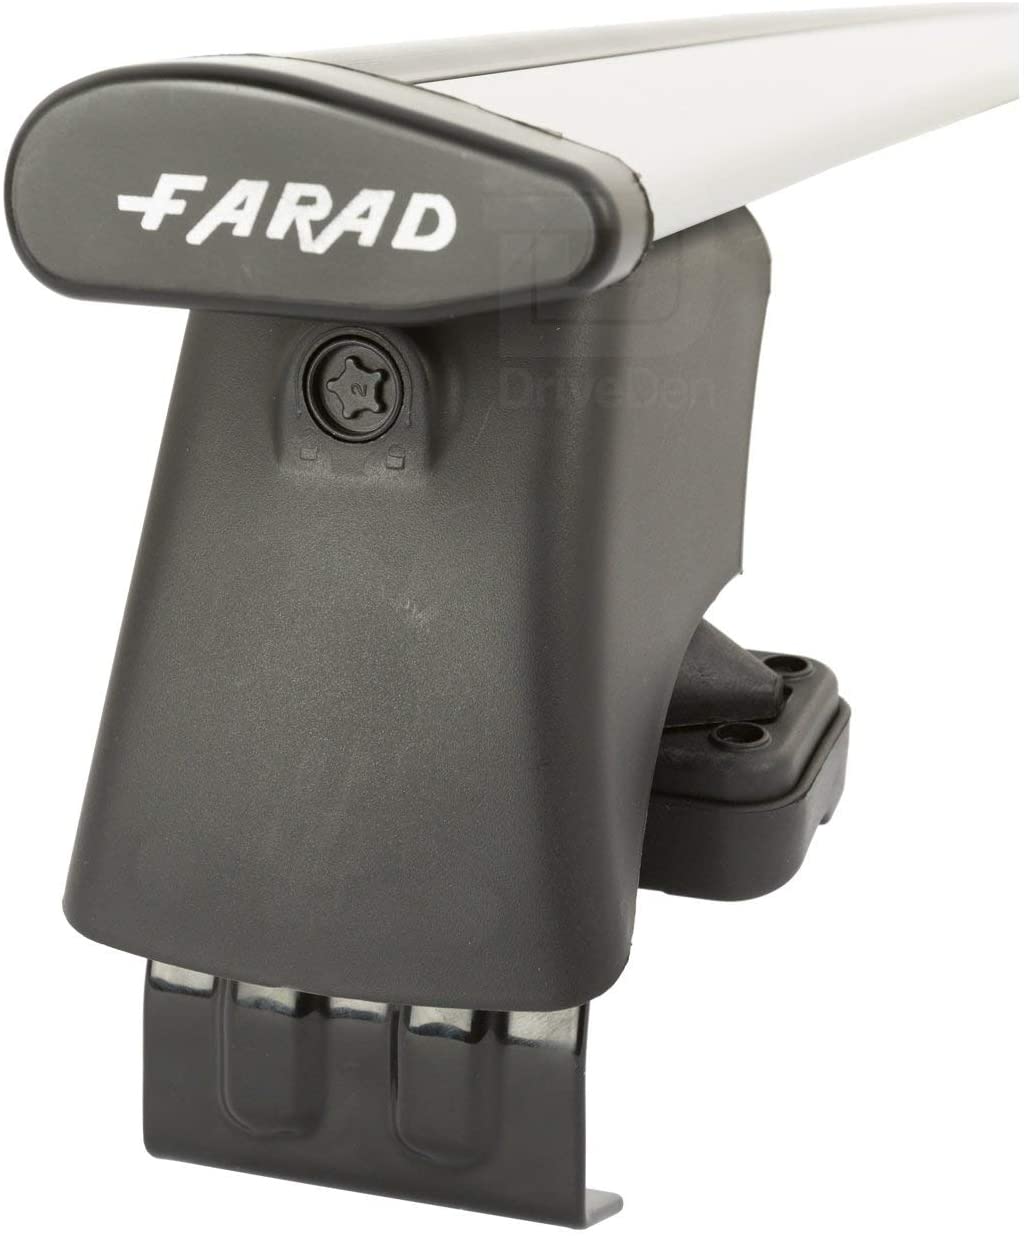 FARAD-Kit H2 per barre portatutto - Infiniti Q50 2015> (senza corrimano)